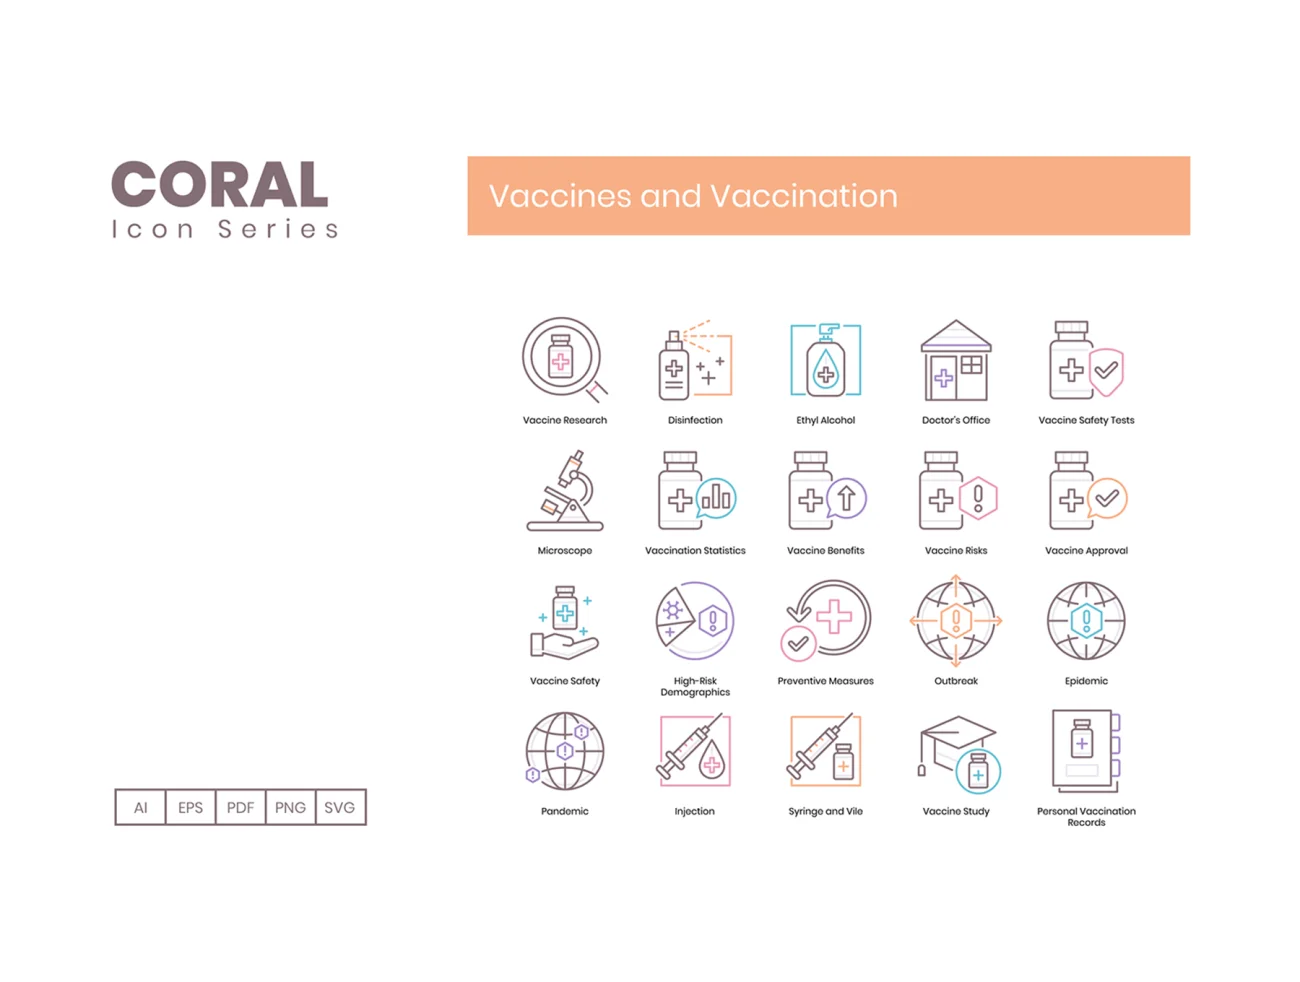 65个病毒疫苗接种图标珊瑚色系类 65 Vaccines and Vaccination Icons  Coral Series插图5